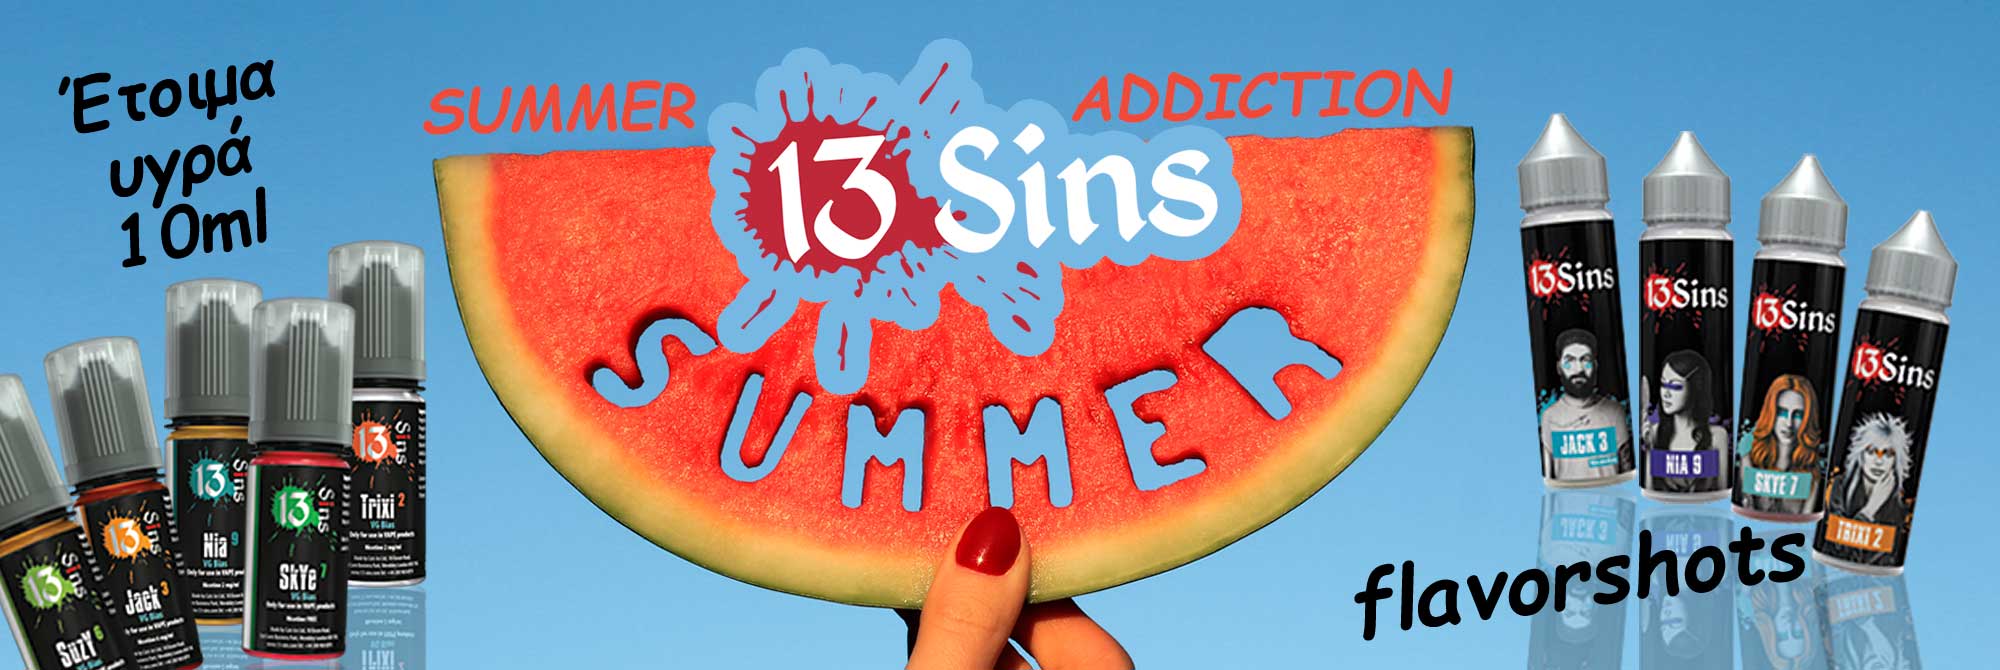 BANNER 13 Sins summer flavors 10ml